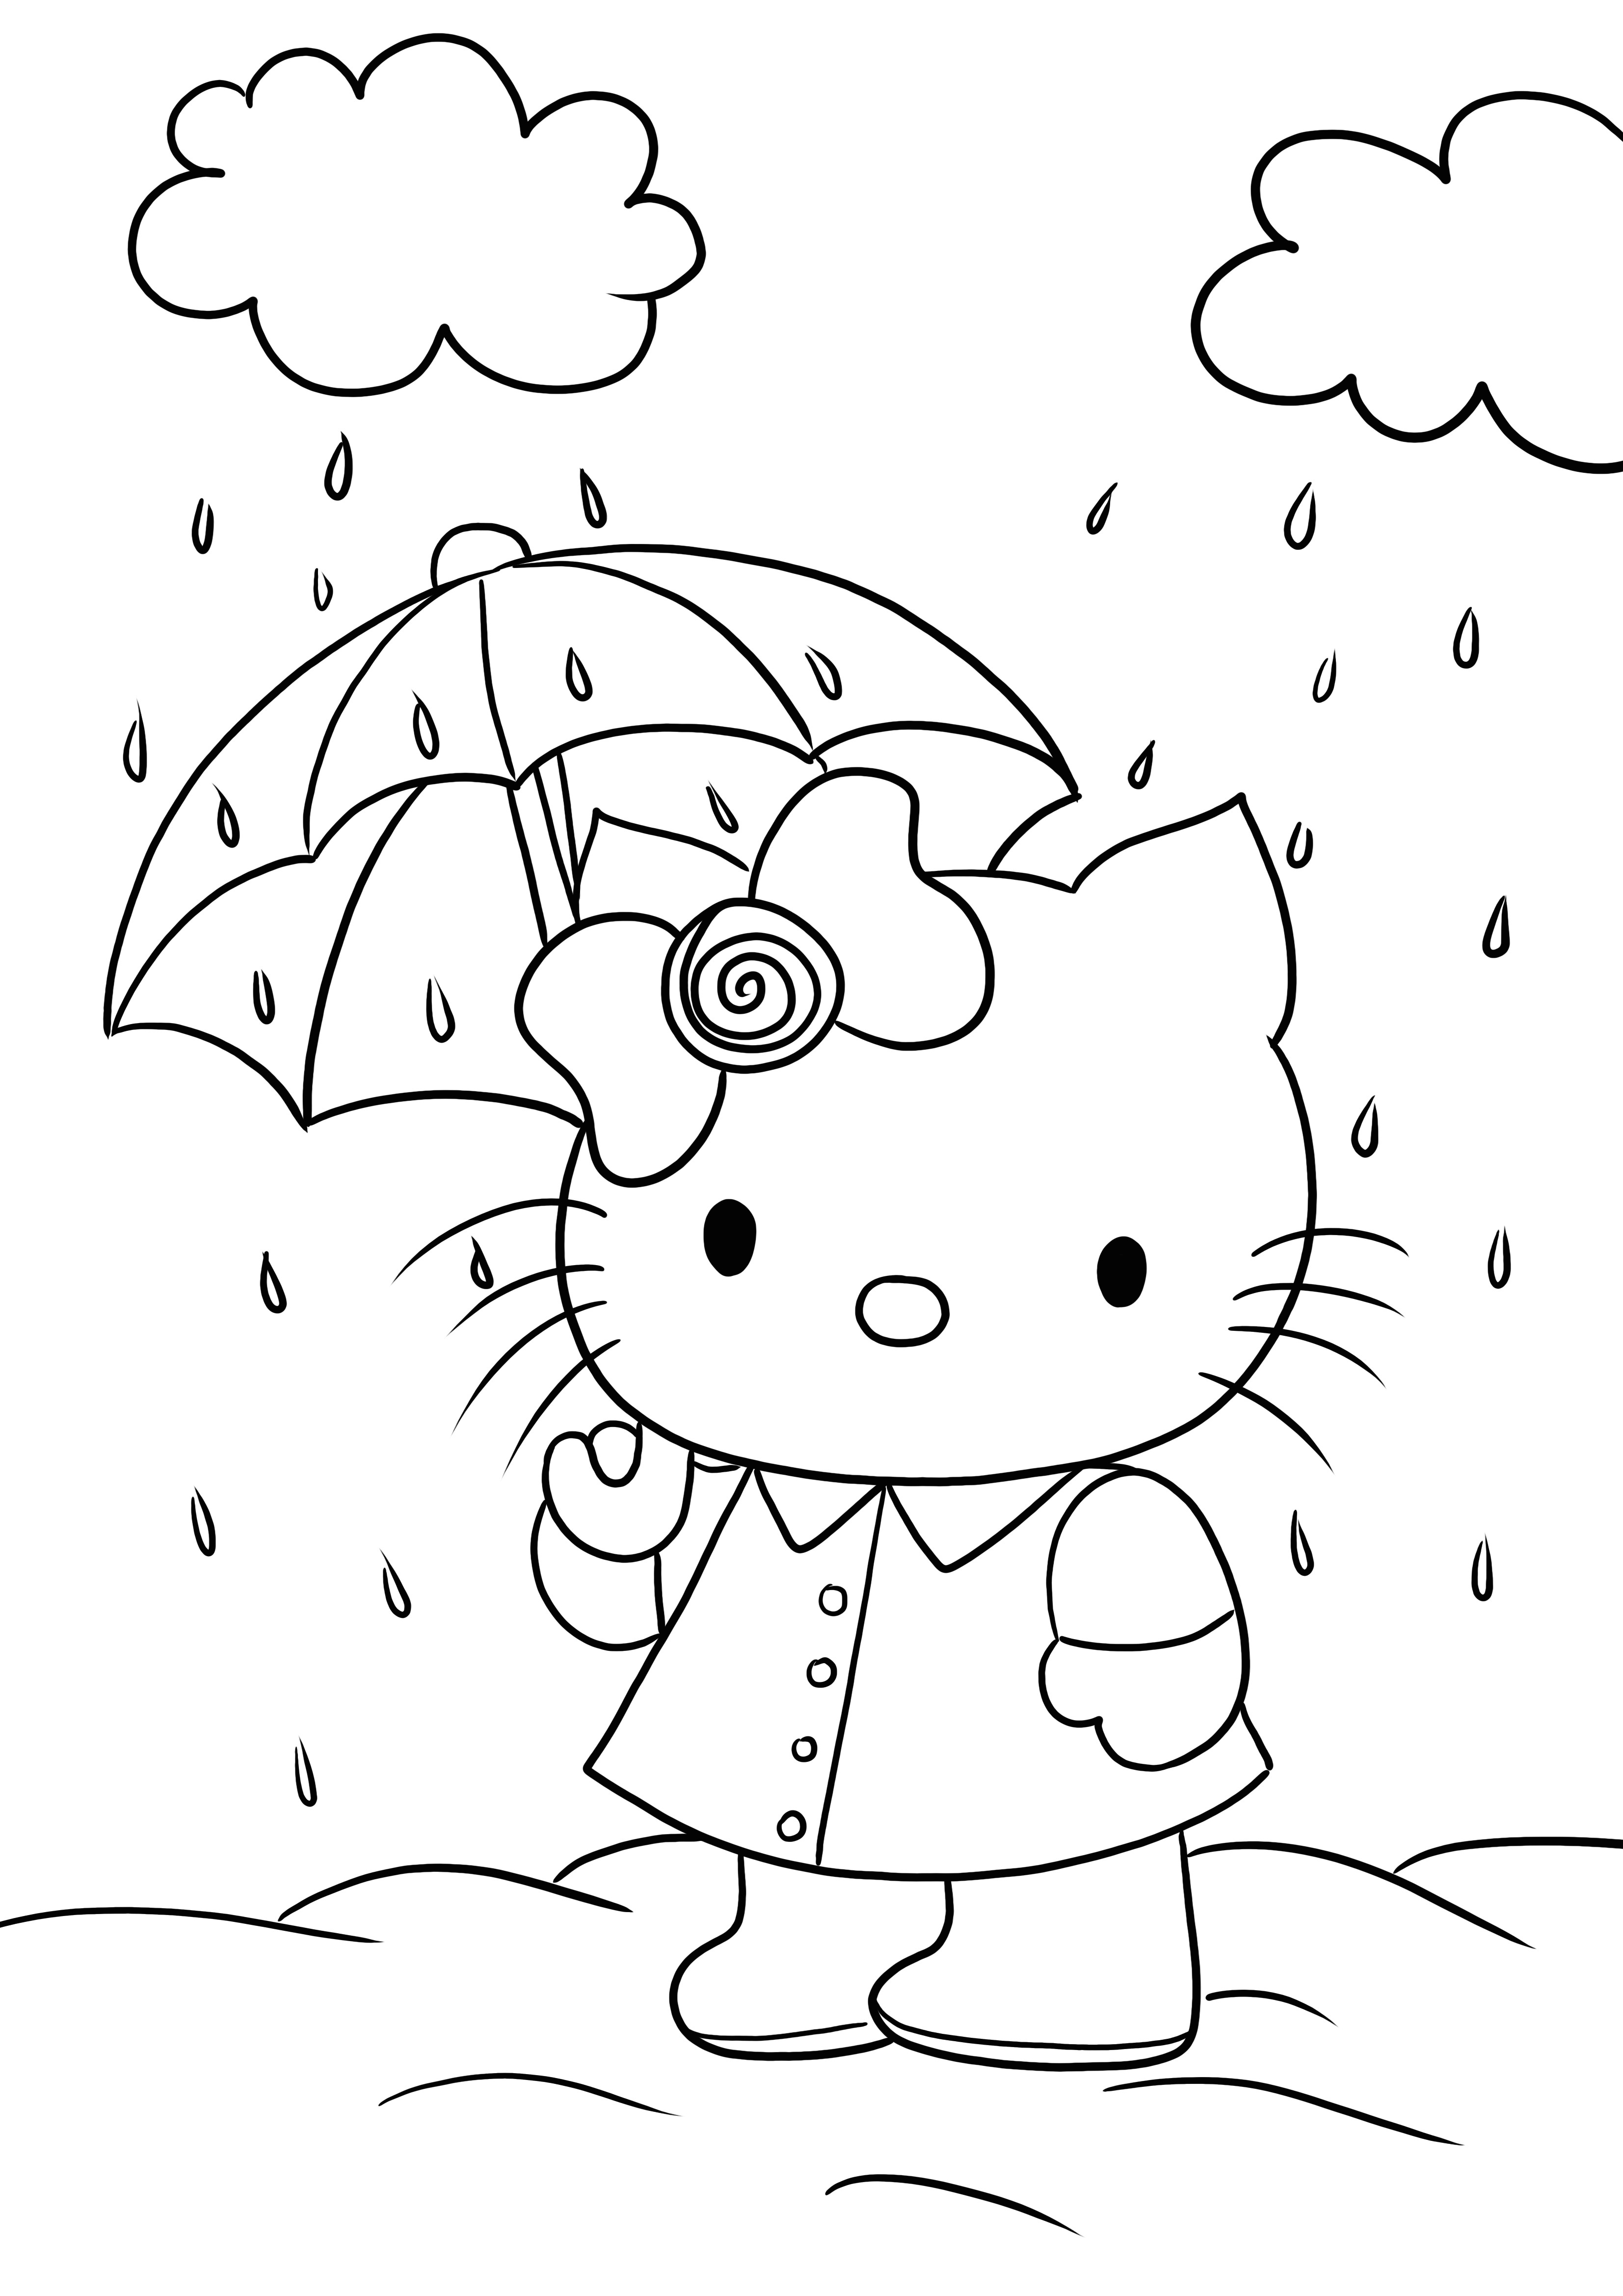 Hello Kitty di bawah payung siap untuk dicetak dan diwarnai gambarnya